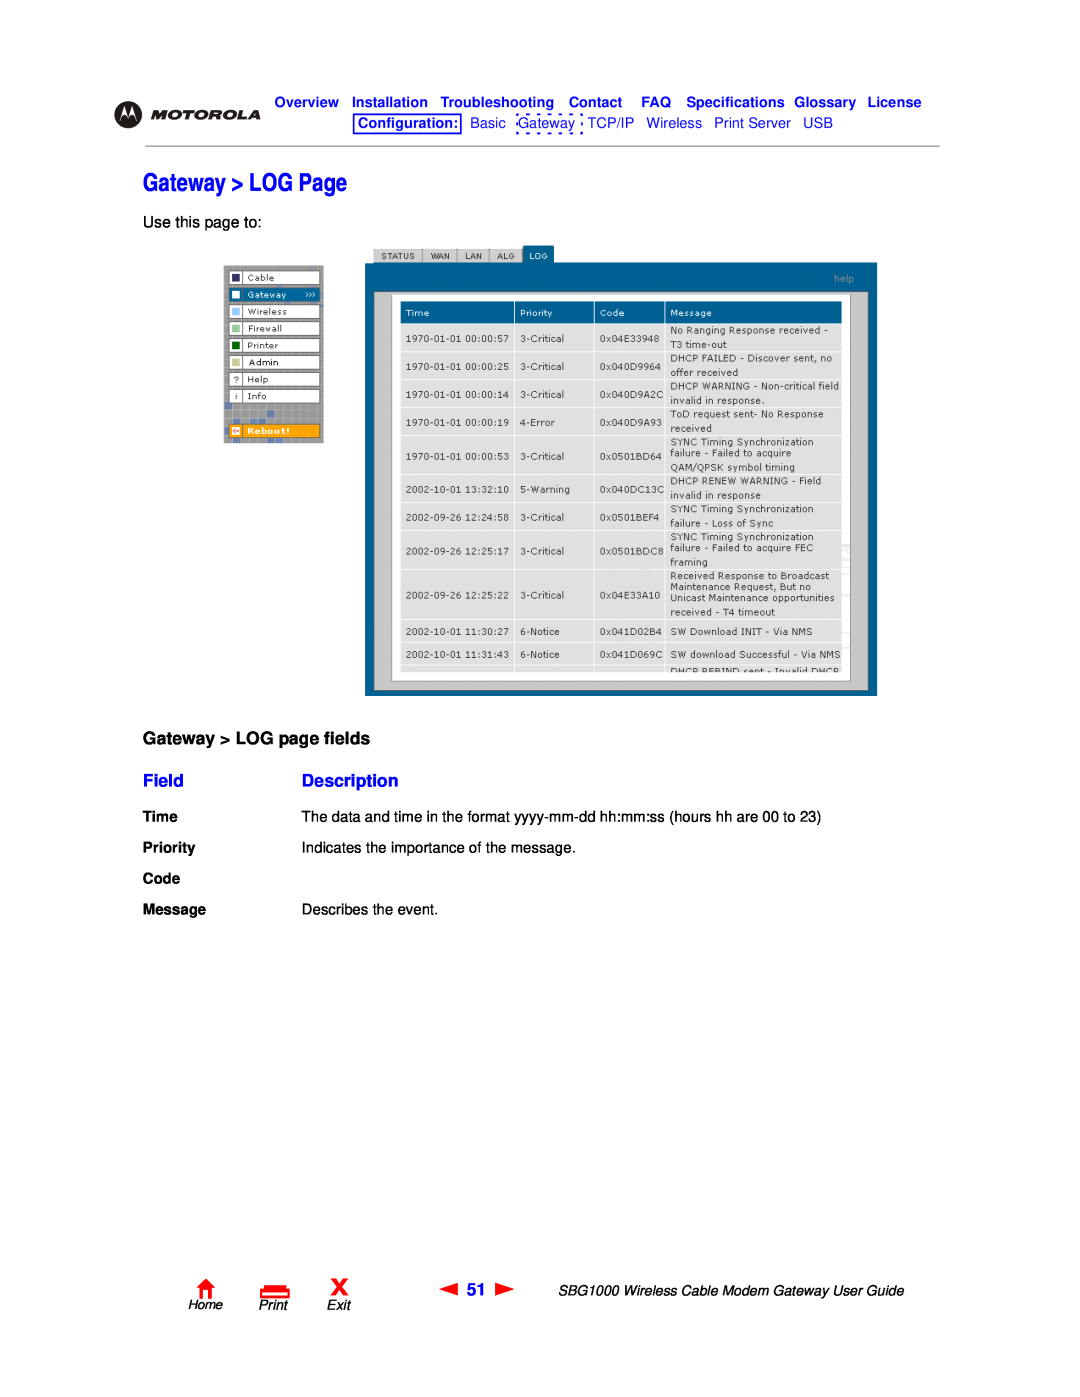 Motorola SBG1000 manual Gateway LOG Page, Gateway LOG page fields, Field, Description, Home Print Exit 